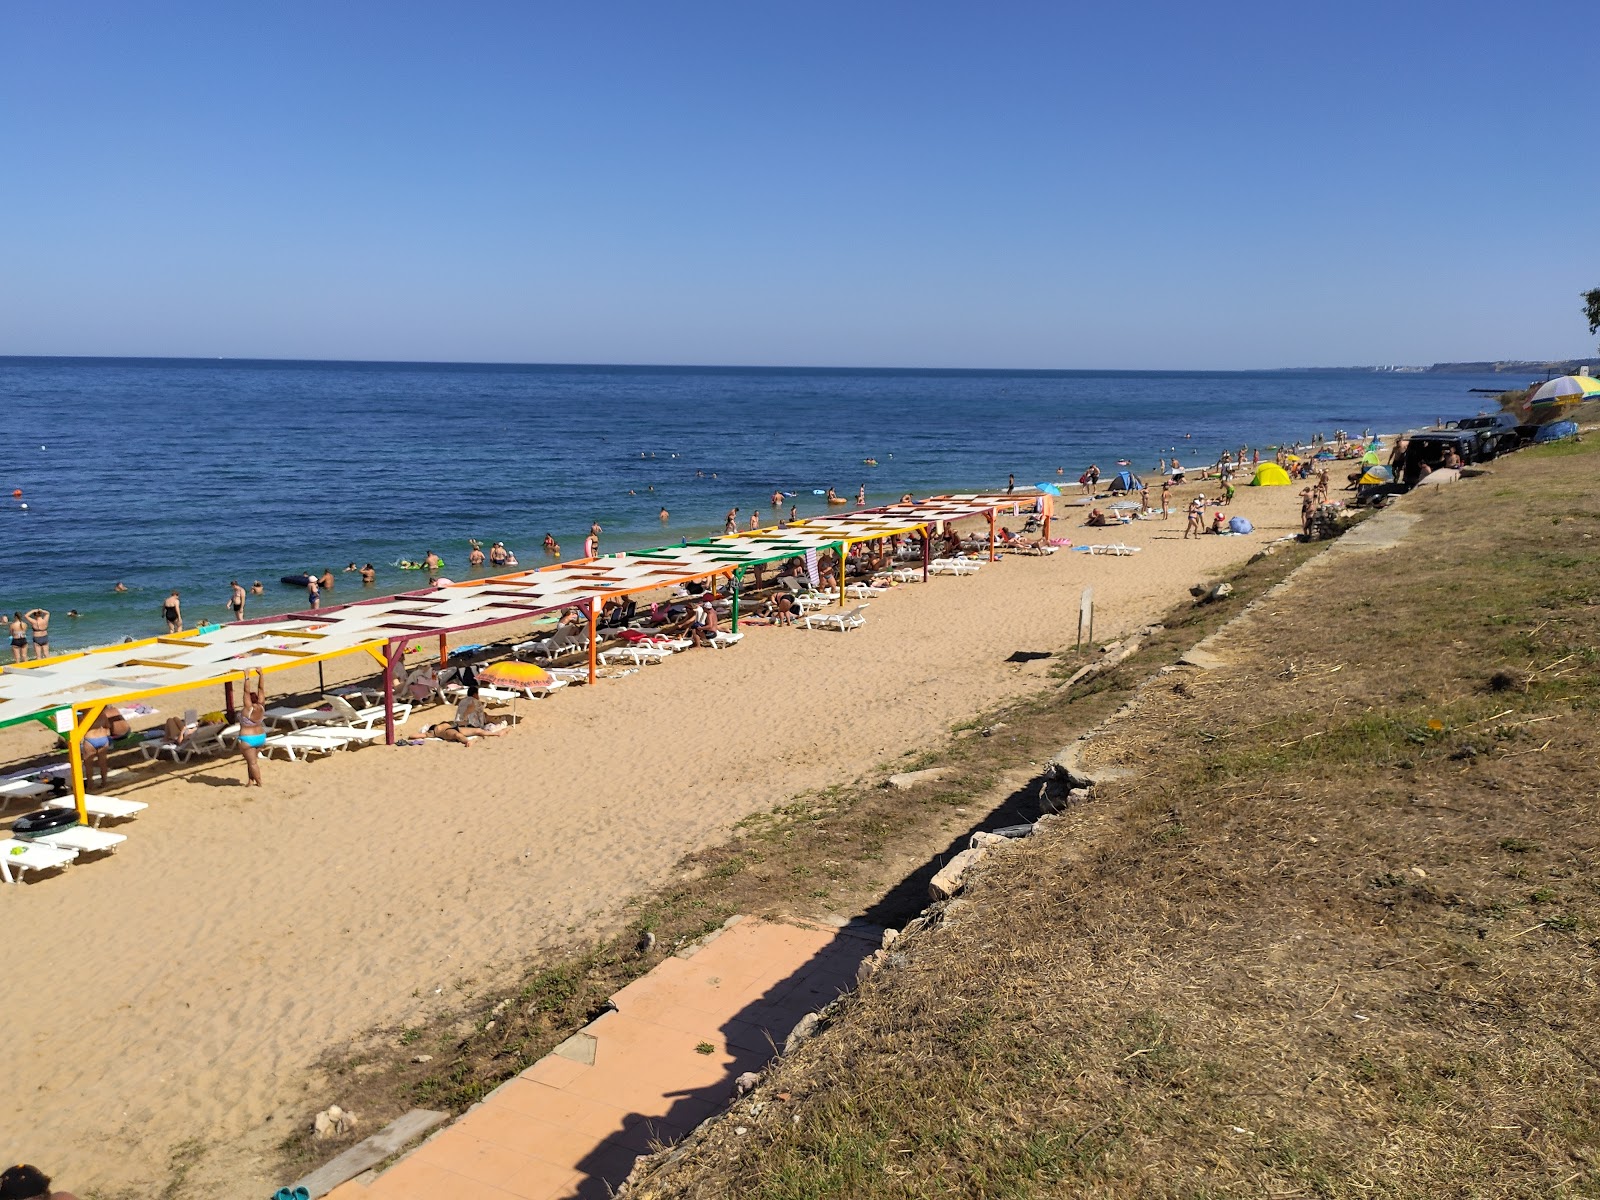 Uchkuevka beach'in fotoğrafı parlak kum yüzey ile